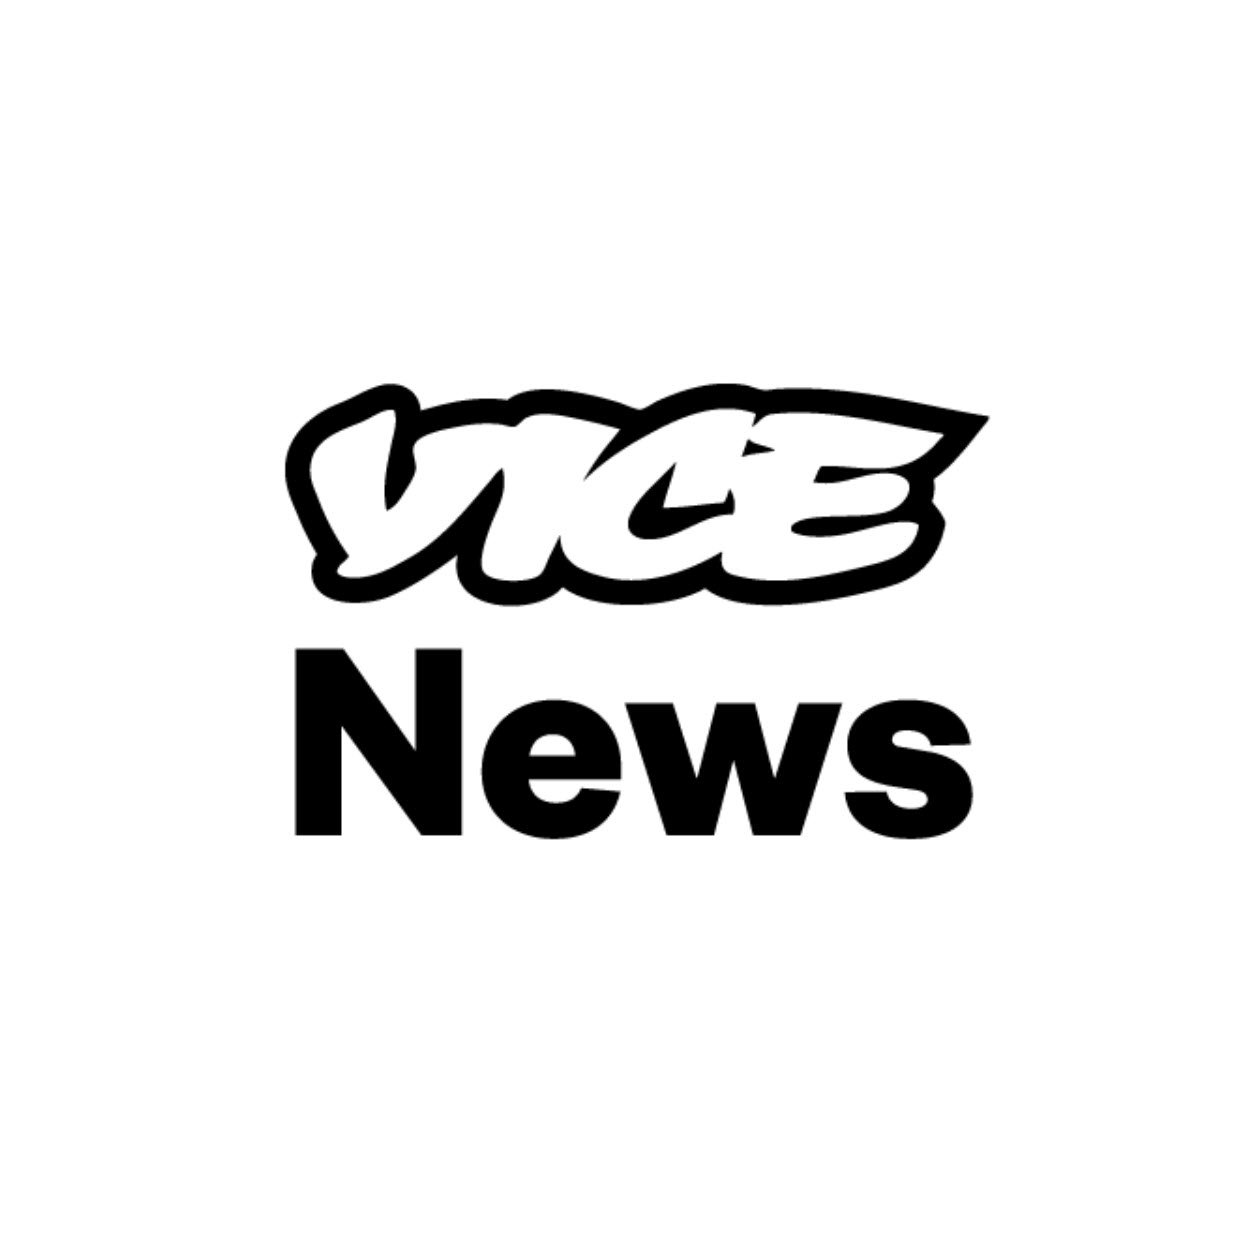 Vice News jpg.jpg